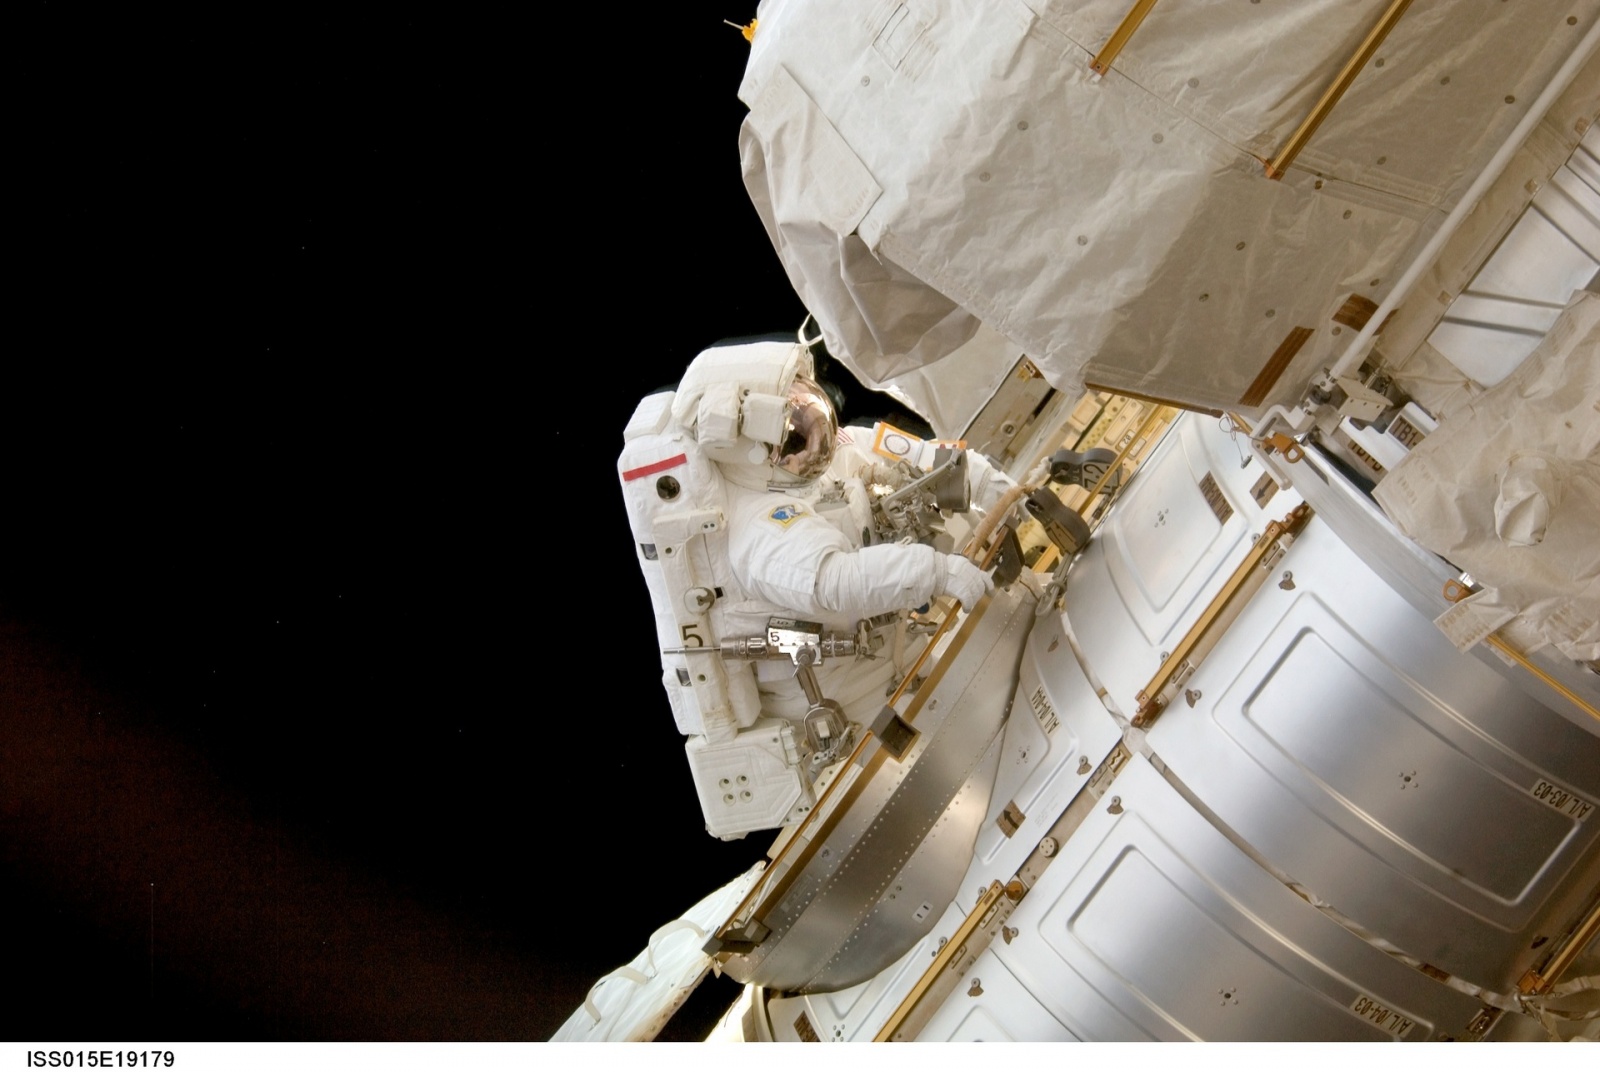 Как в НАСА виртуальная реальность помогает не уплыть в открытый космос - 2